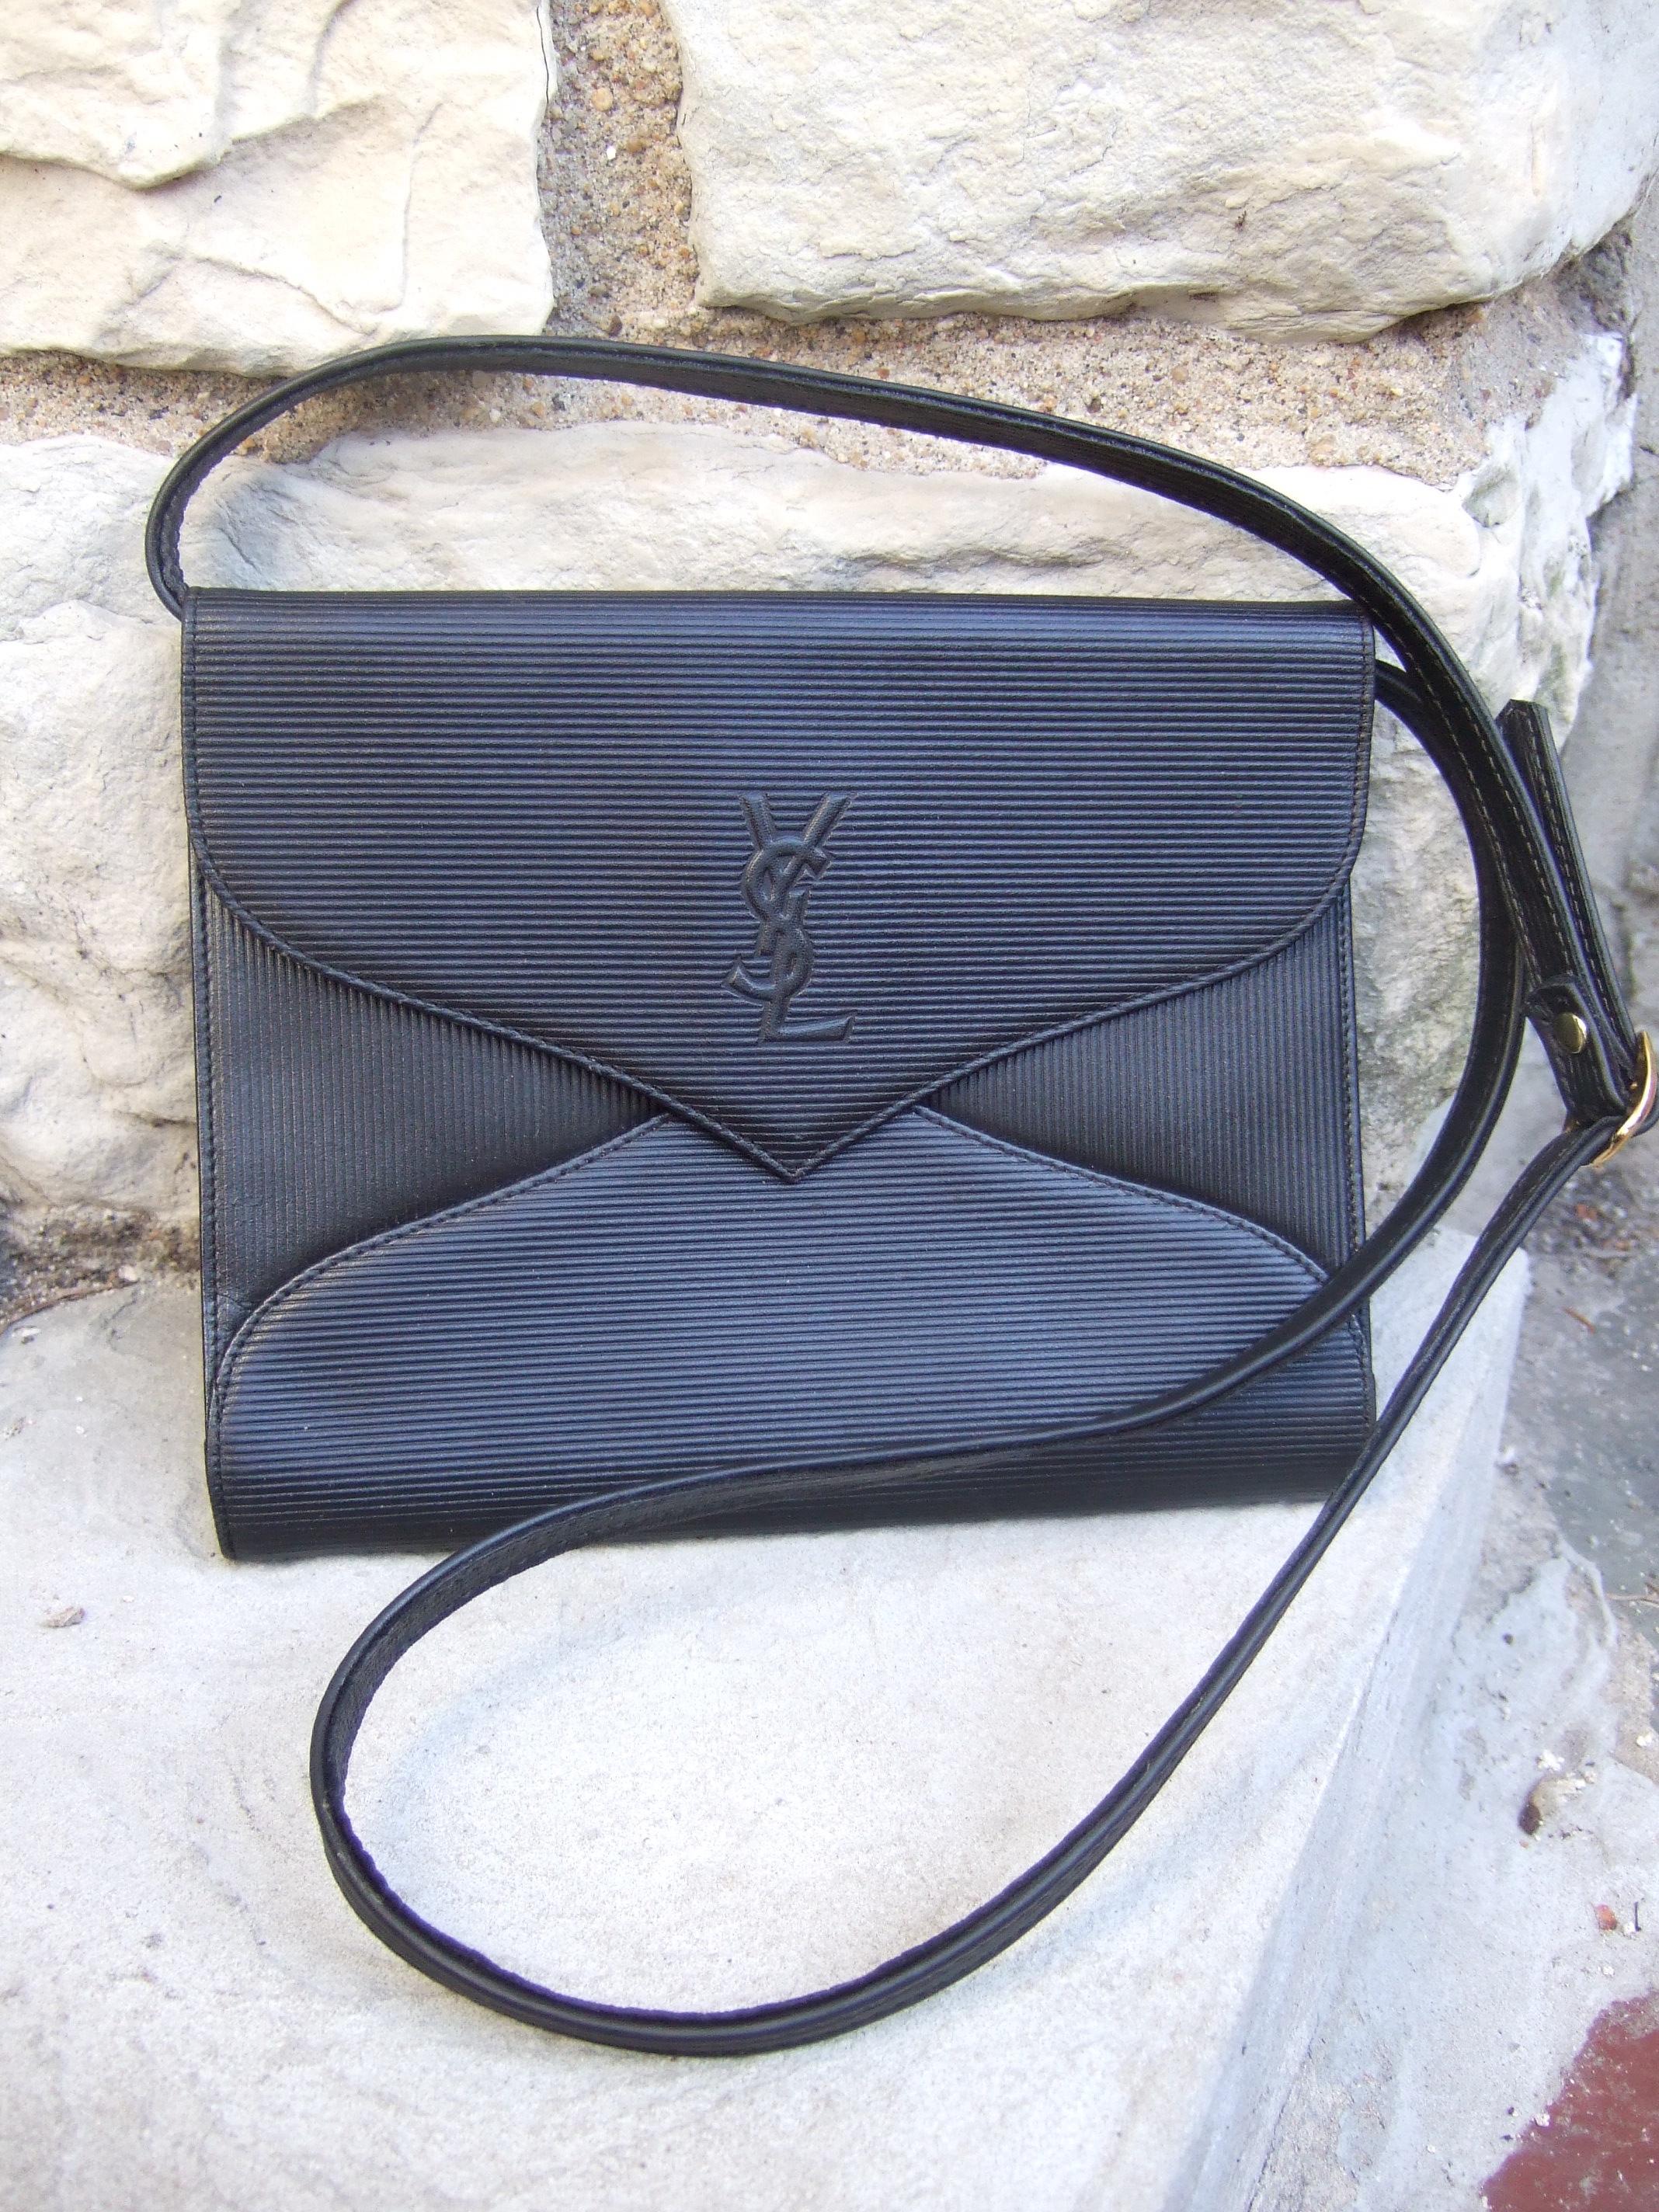 Yves Saint Laurent Chic Black Leather Versatile Clutch - Shoulder Bag c 1980s 5